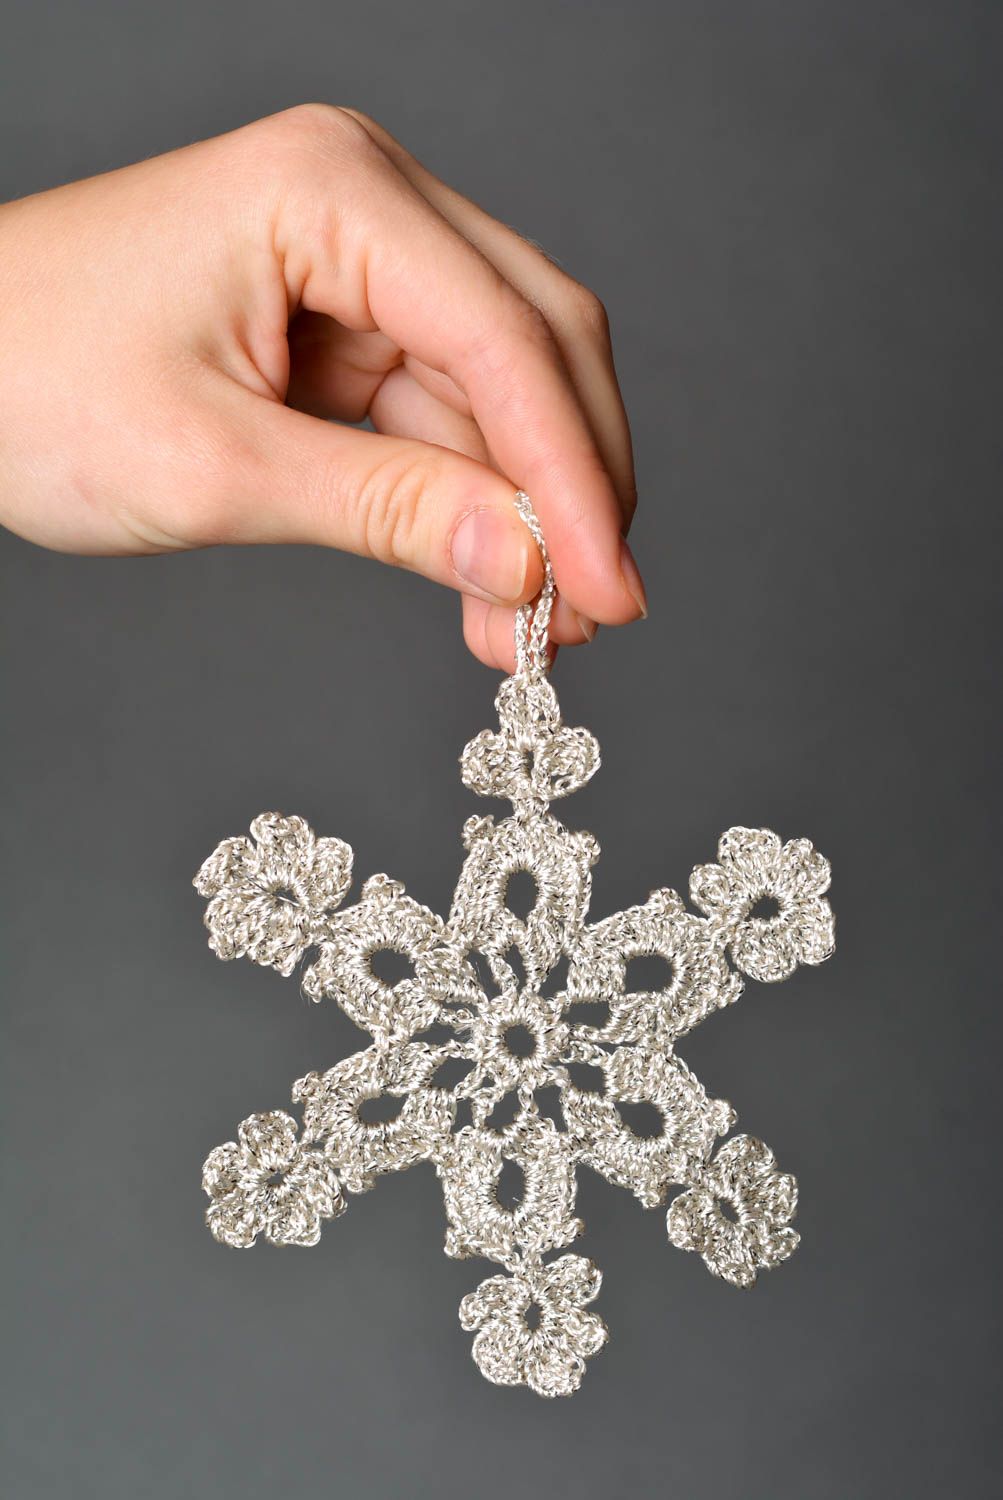 Елочная игрушка ручной работы украшение к новому году снежинка крючком фото 5